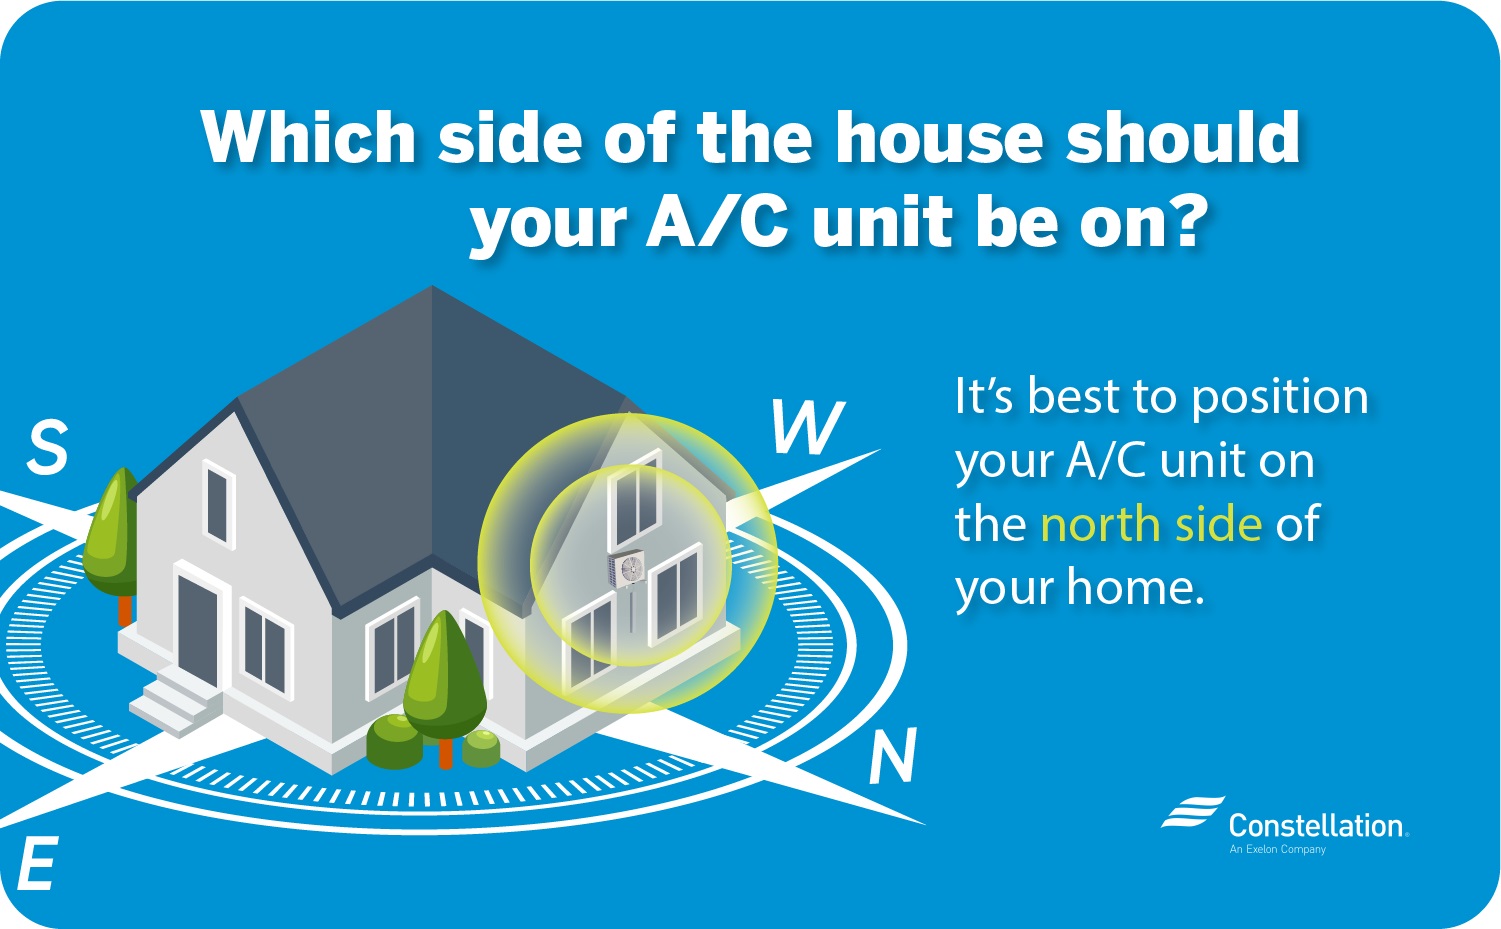 空调应该开在房子的哪一边?